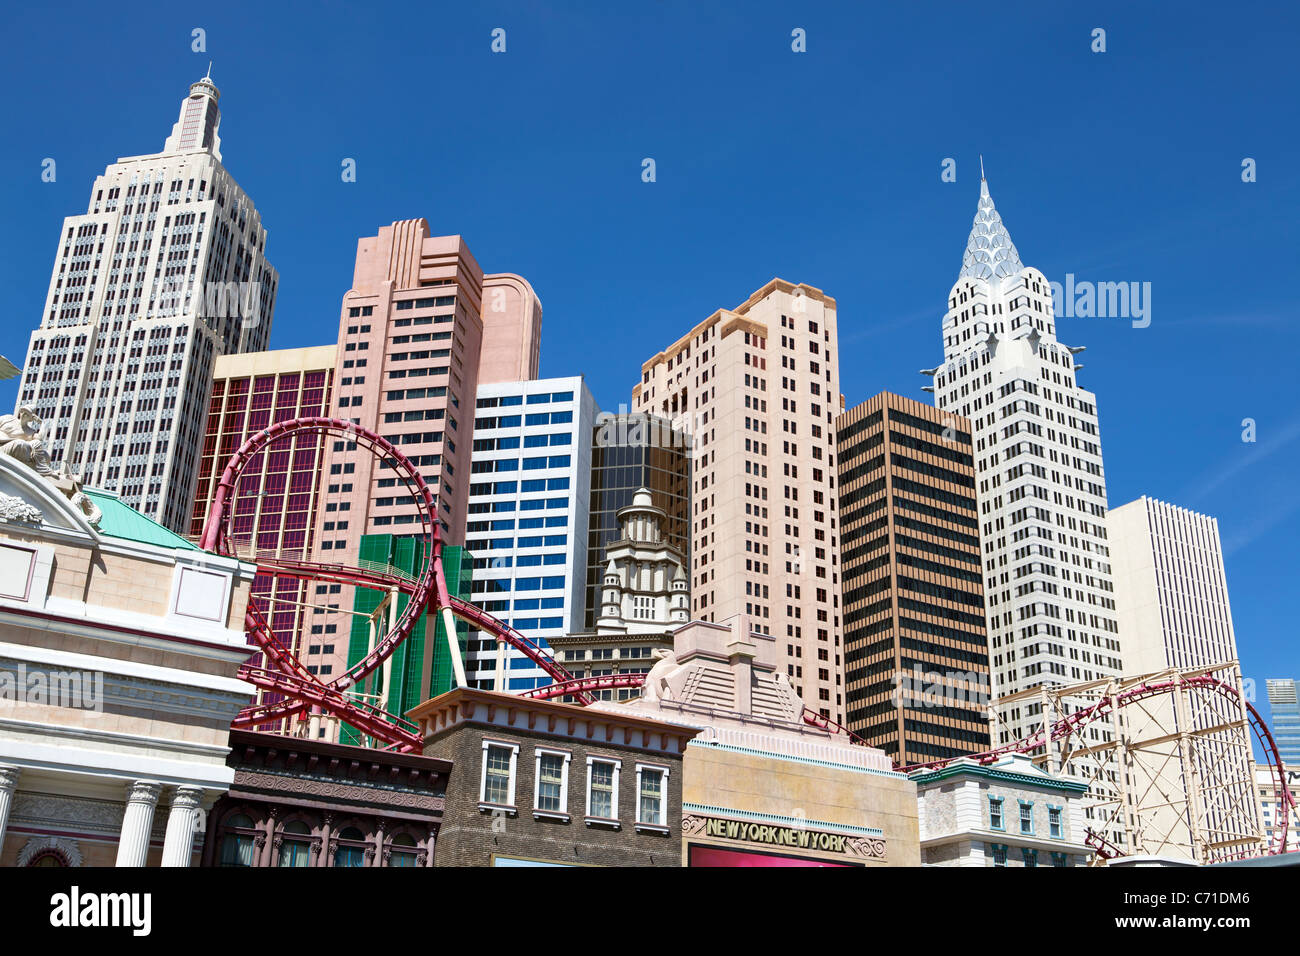 États-unis d'Amérique, Nevada, Las Vegas, hôtels et casinos le long du Strip Banque D'Images